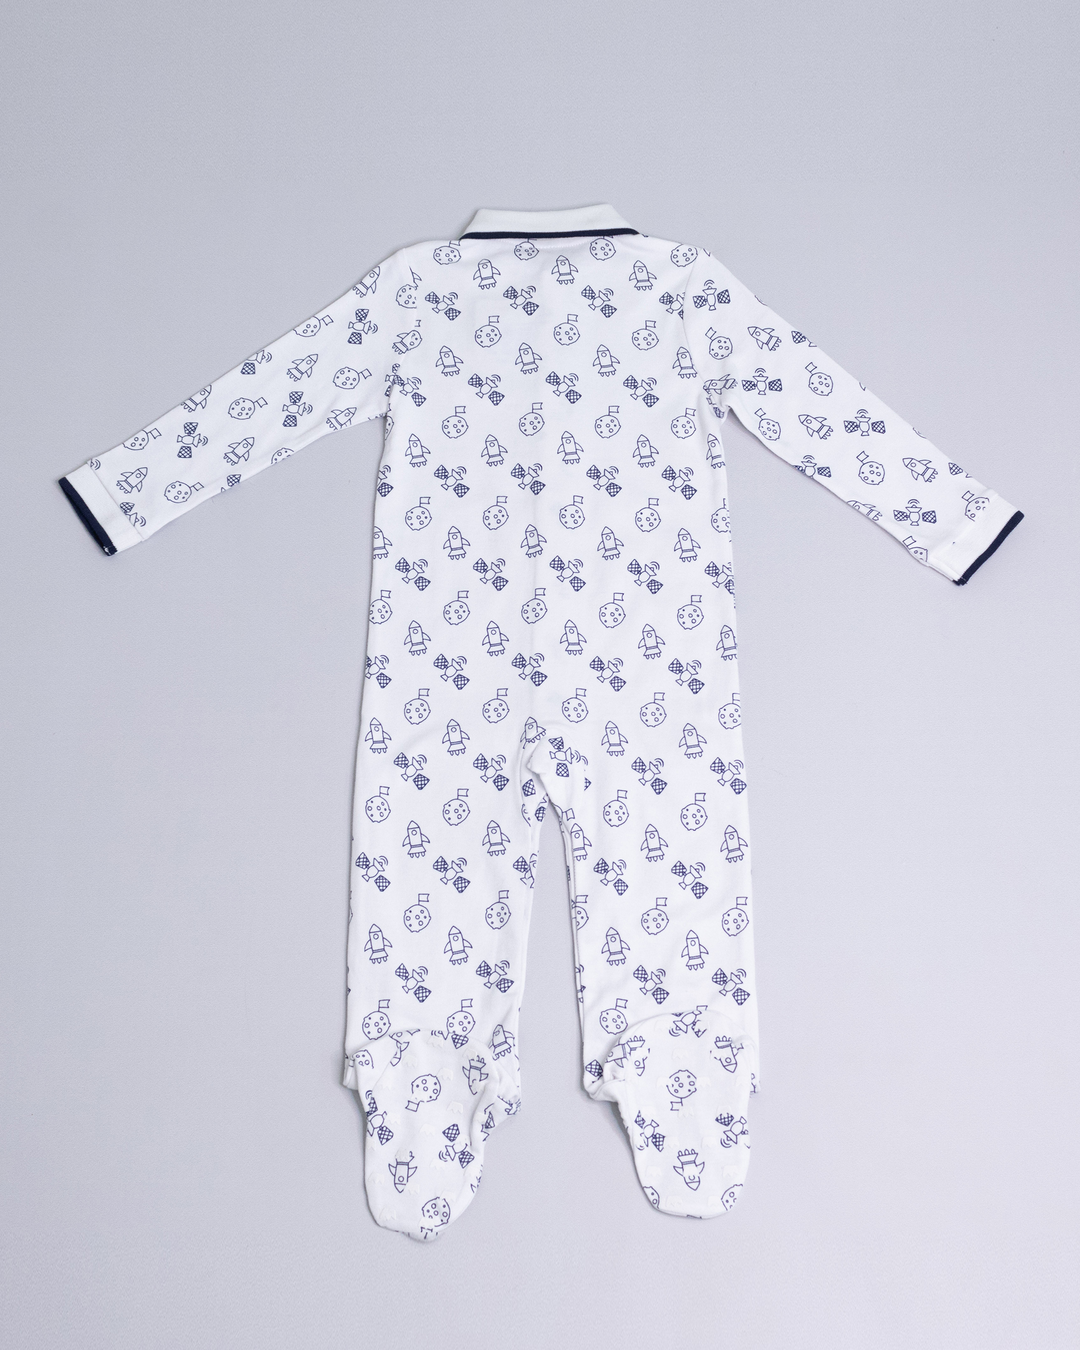 Pijama blanca con figuras del espacio